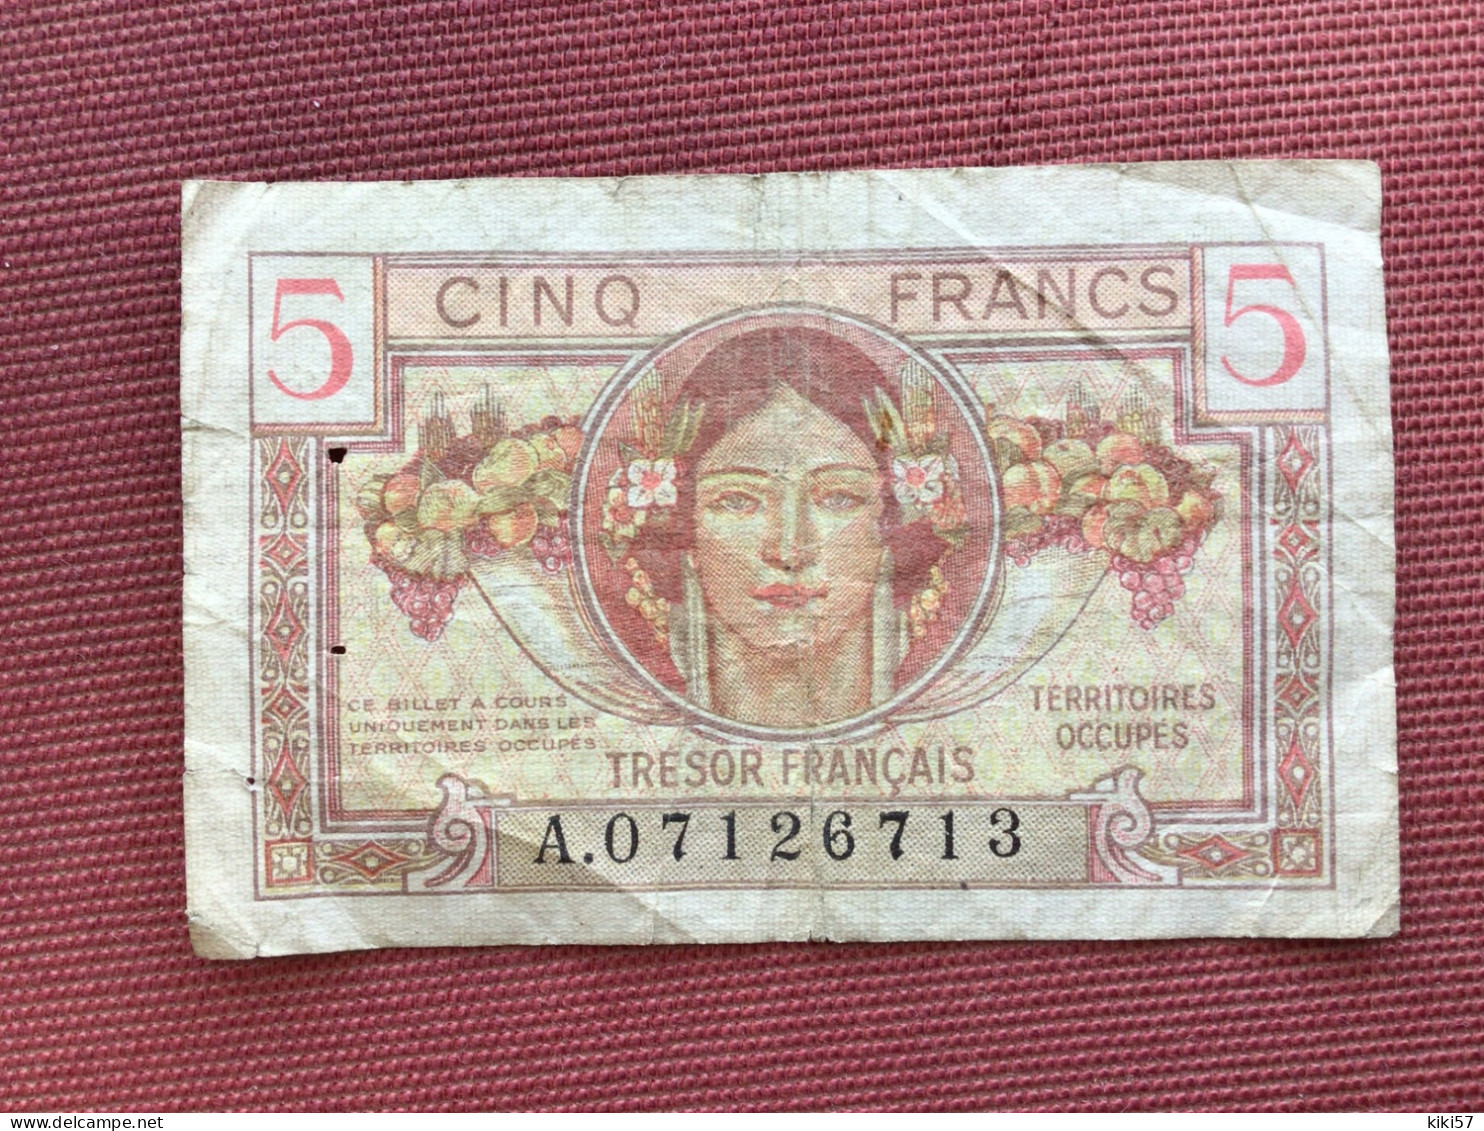 TRÉSOR FRANÇAIS Billet De 5 Francs Territoire Occupé - 1947 French Treasury